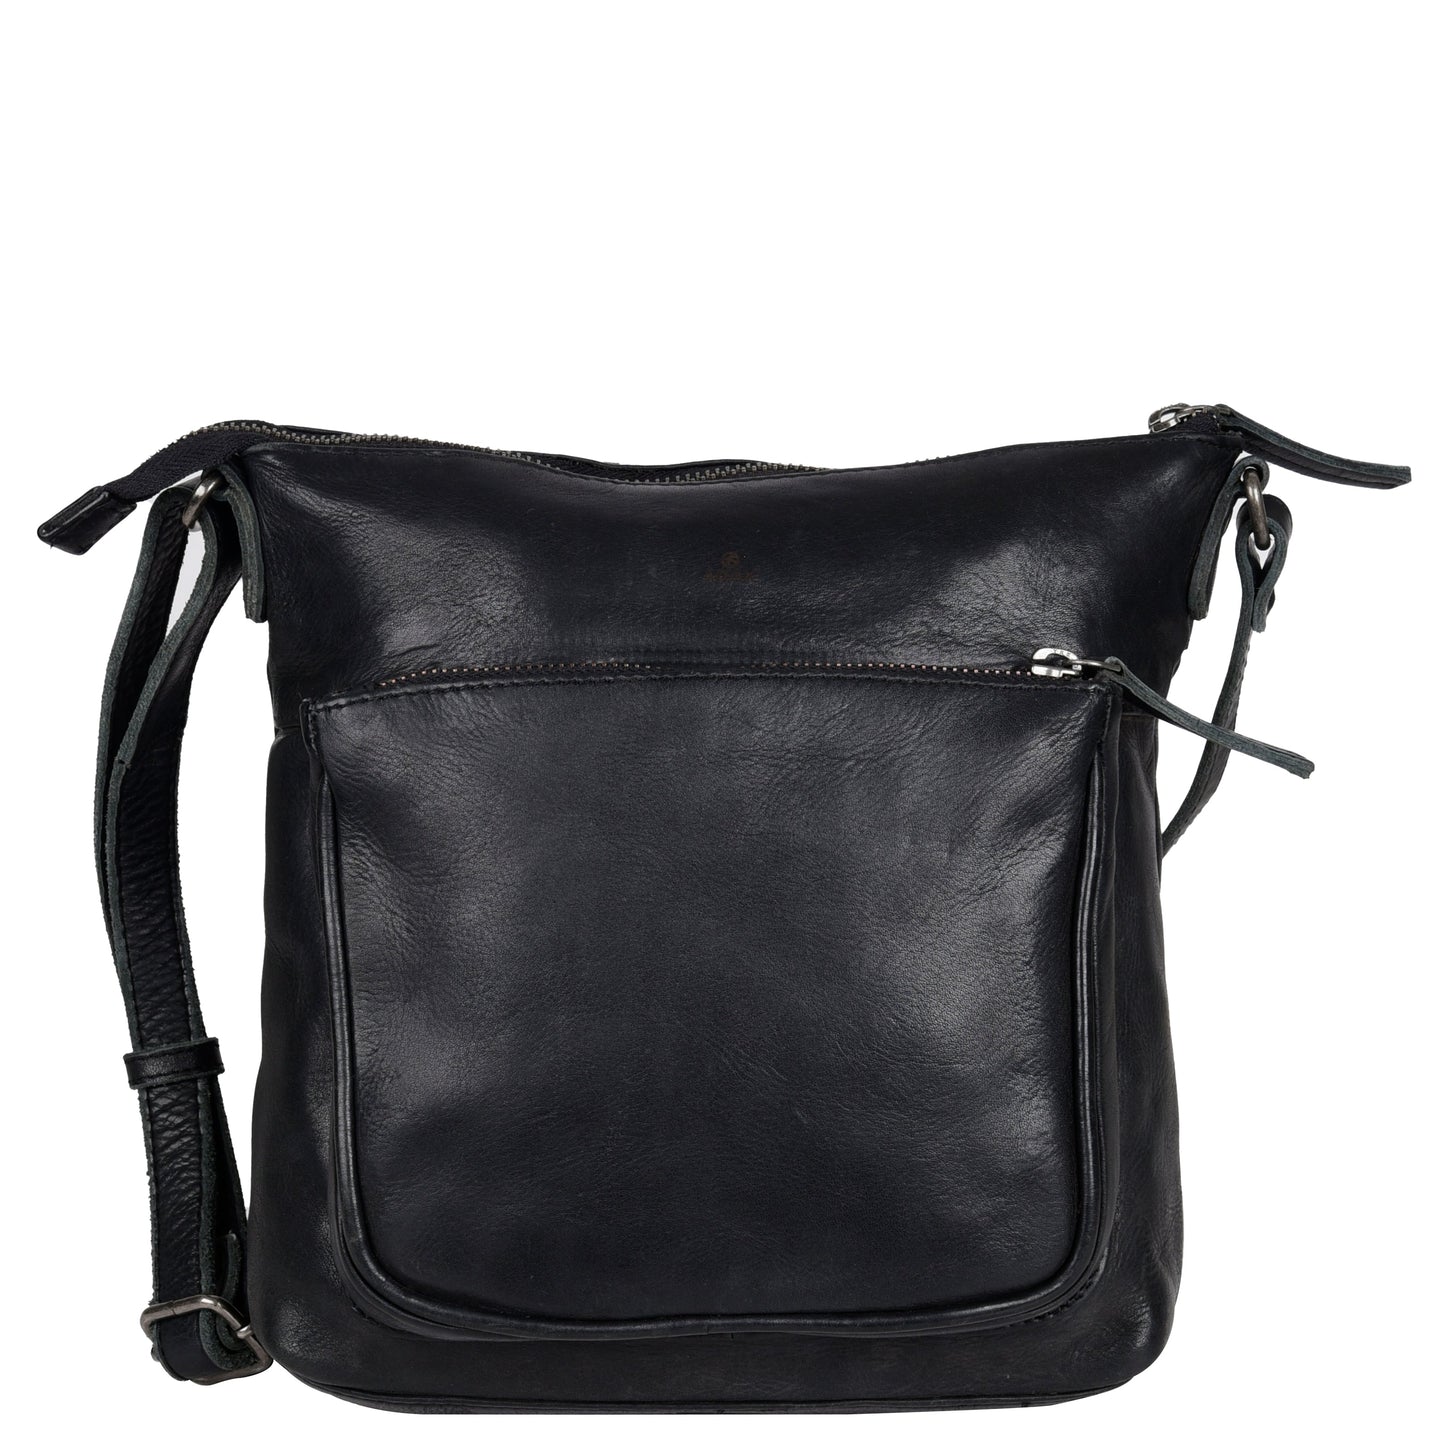 Damenhandtasche 130327 von Adax - Laure Bags and Travel